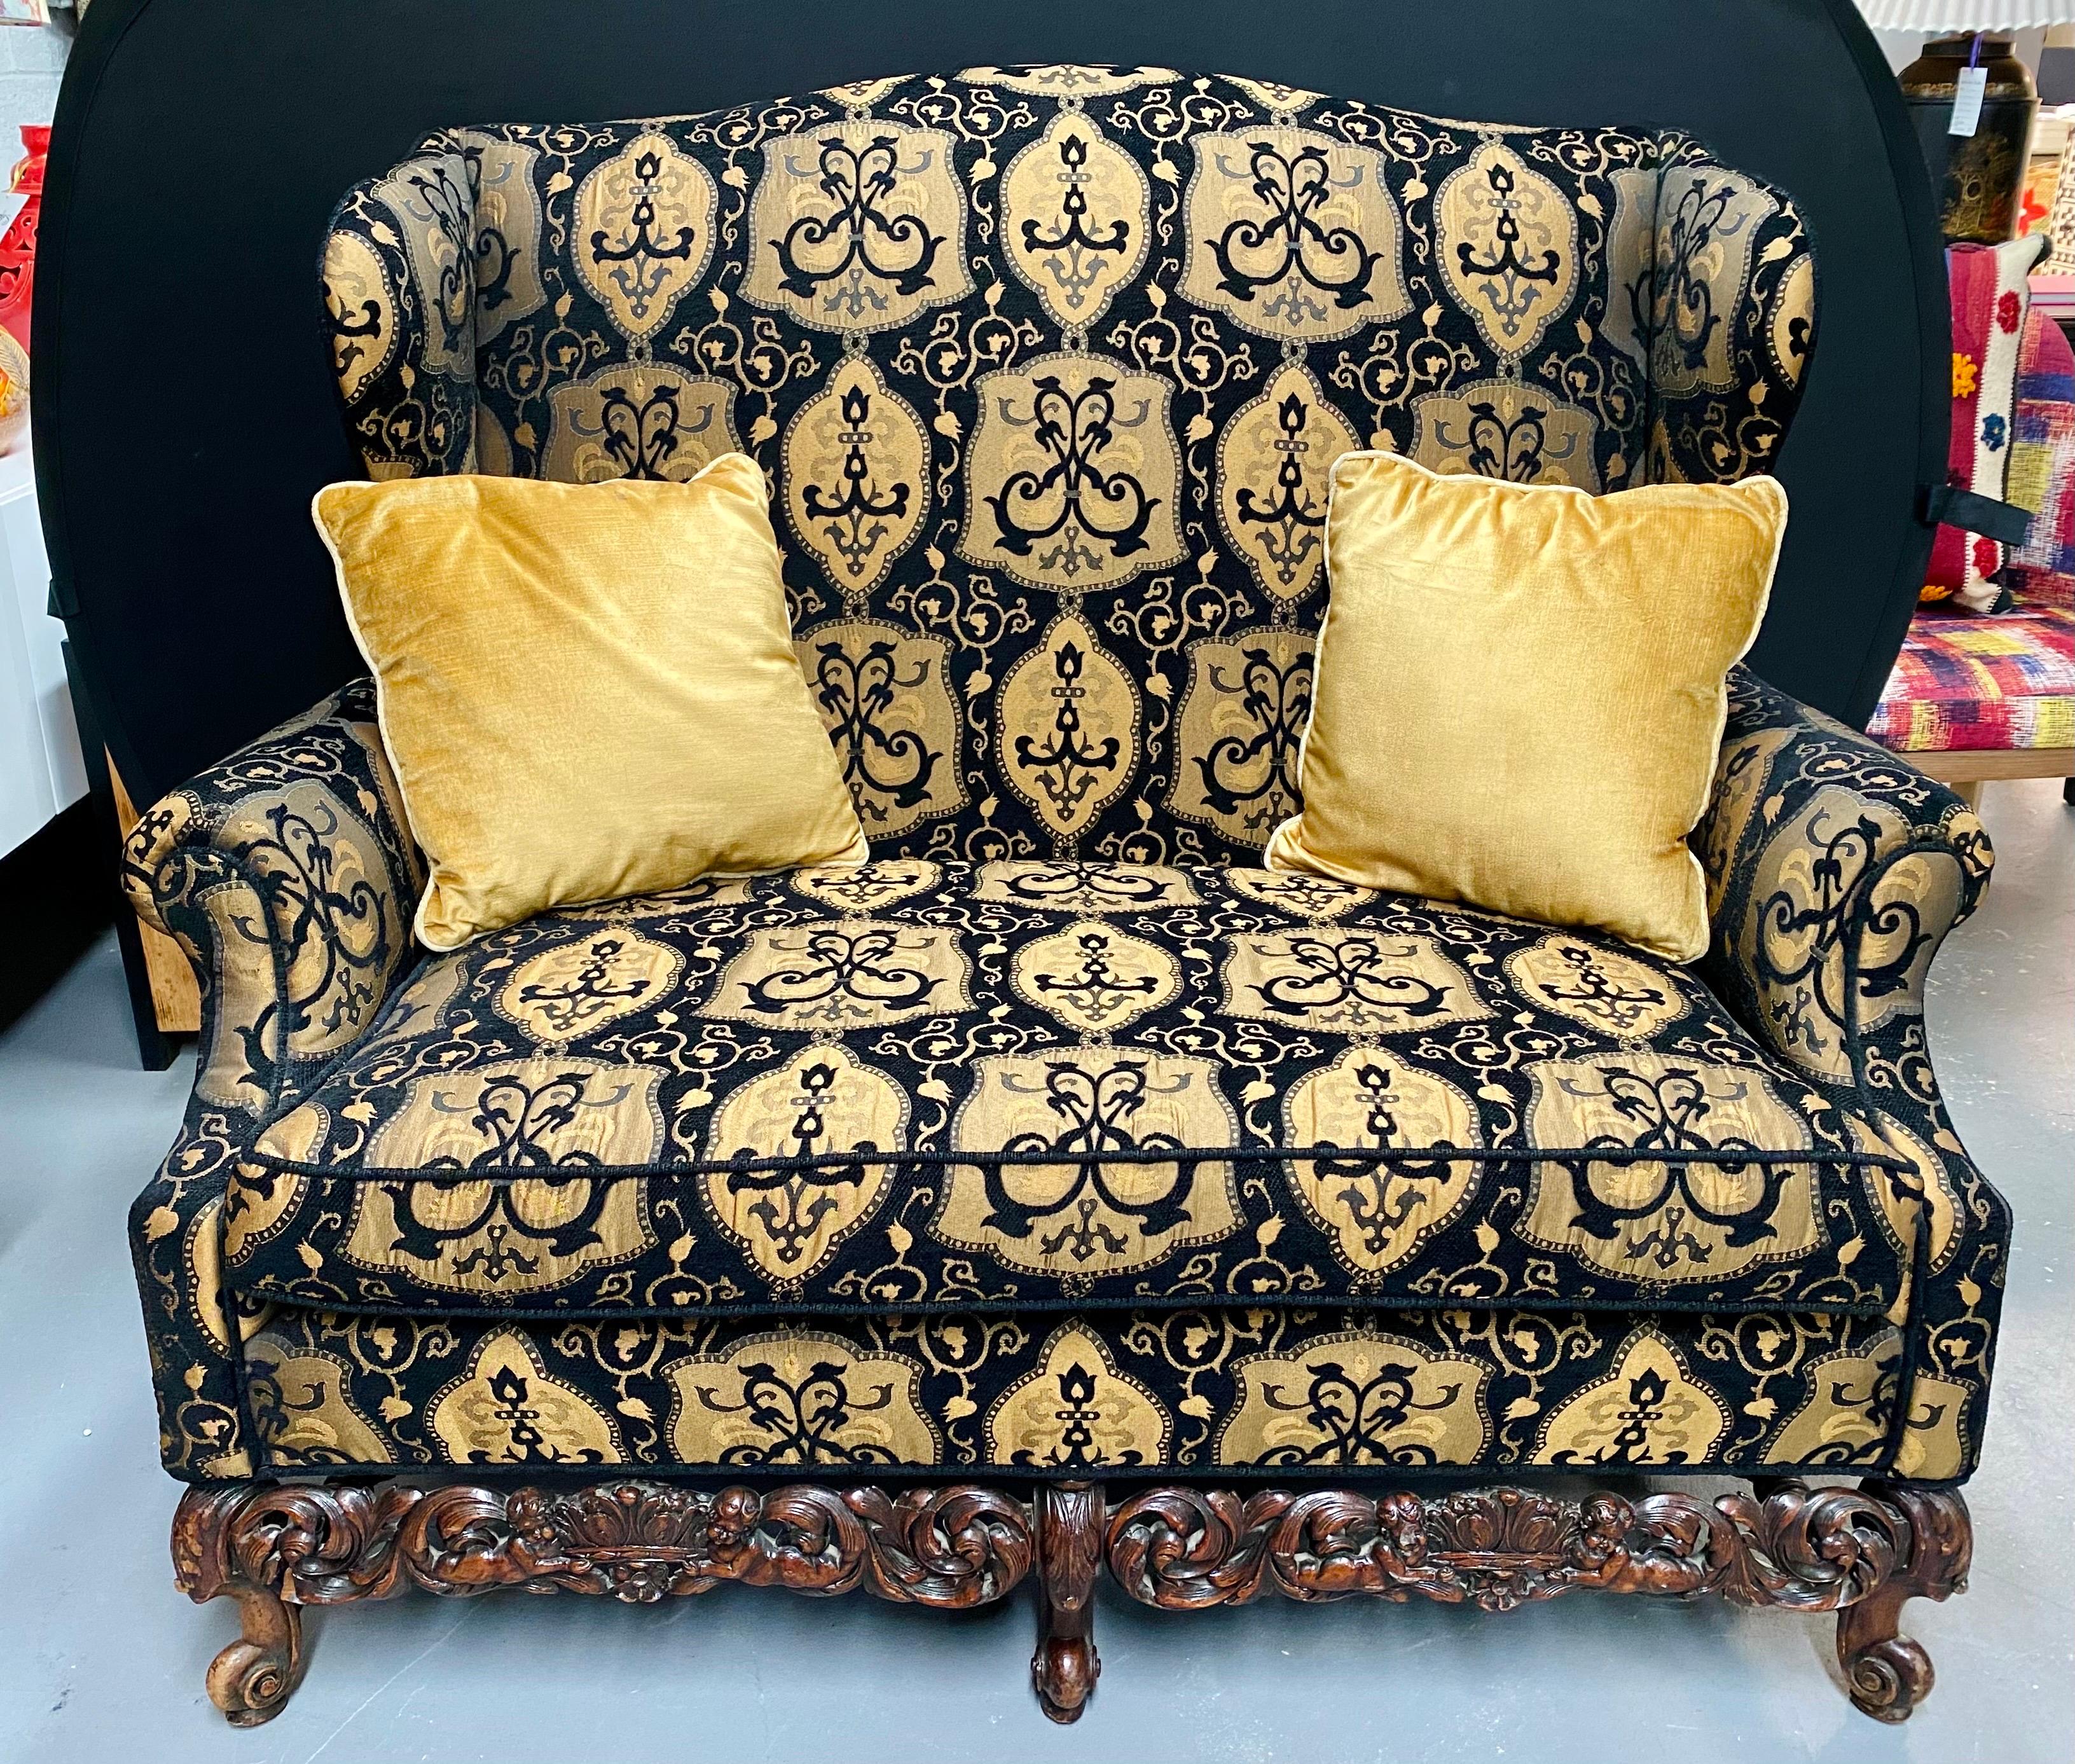 19. bis Anfang 20. Jahrhundert Sofa / Canape oder Loveseat im Rokoko-Stil mit einem feinen Stoff. Dies ist einfach der schönste Fund eines wunderschön bedeckten und geschnitzten übergroßen Sofas oder Kanapees, den man sich wünschen kann. Die